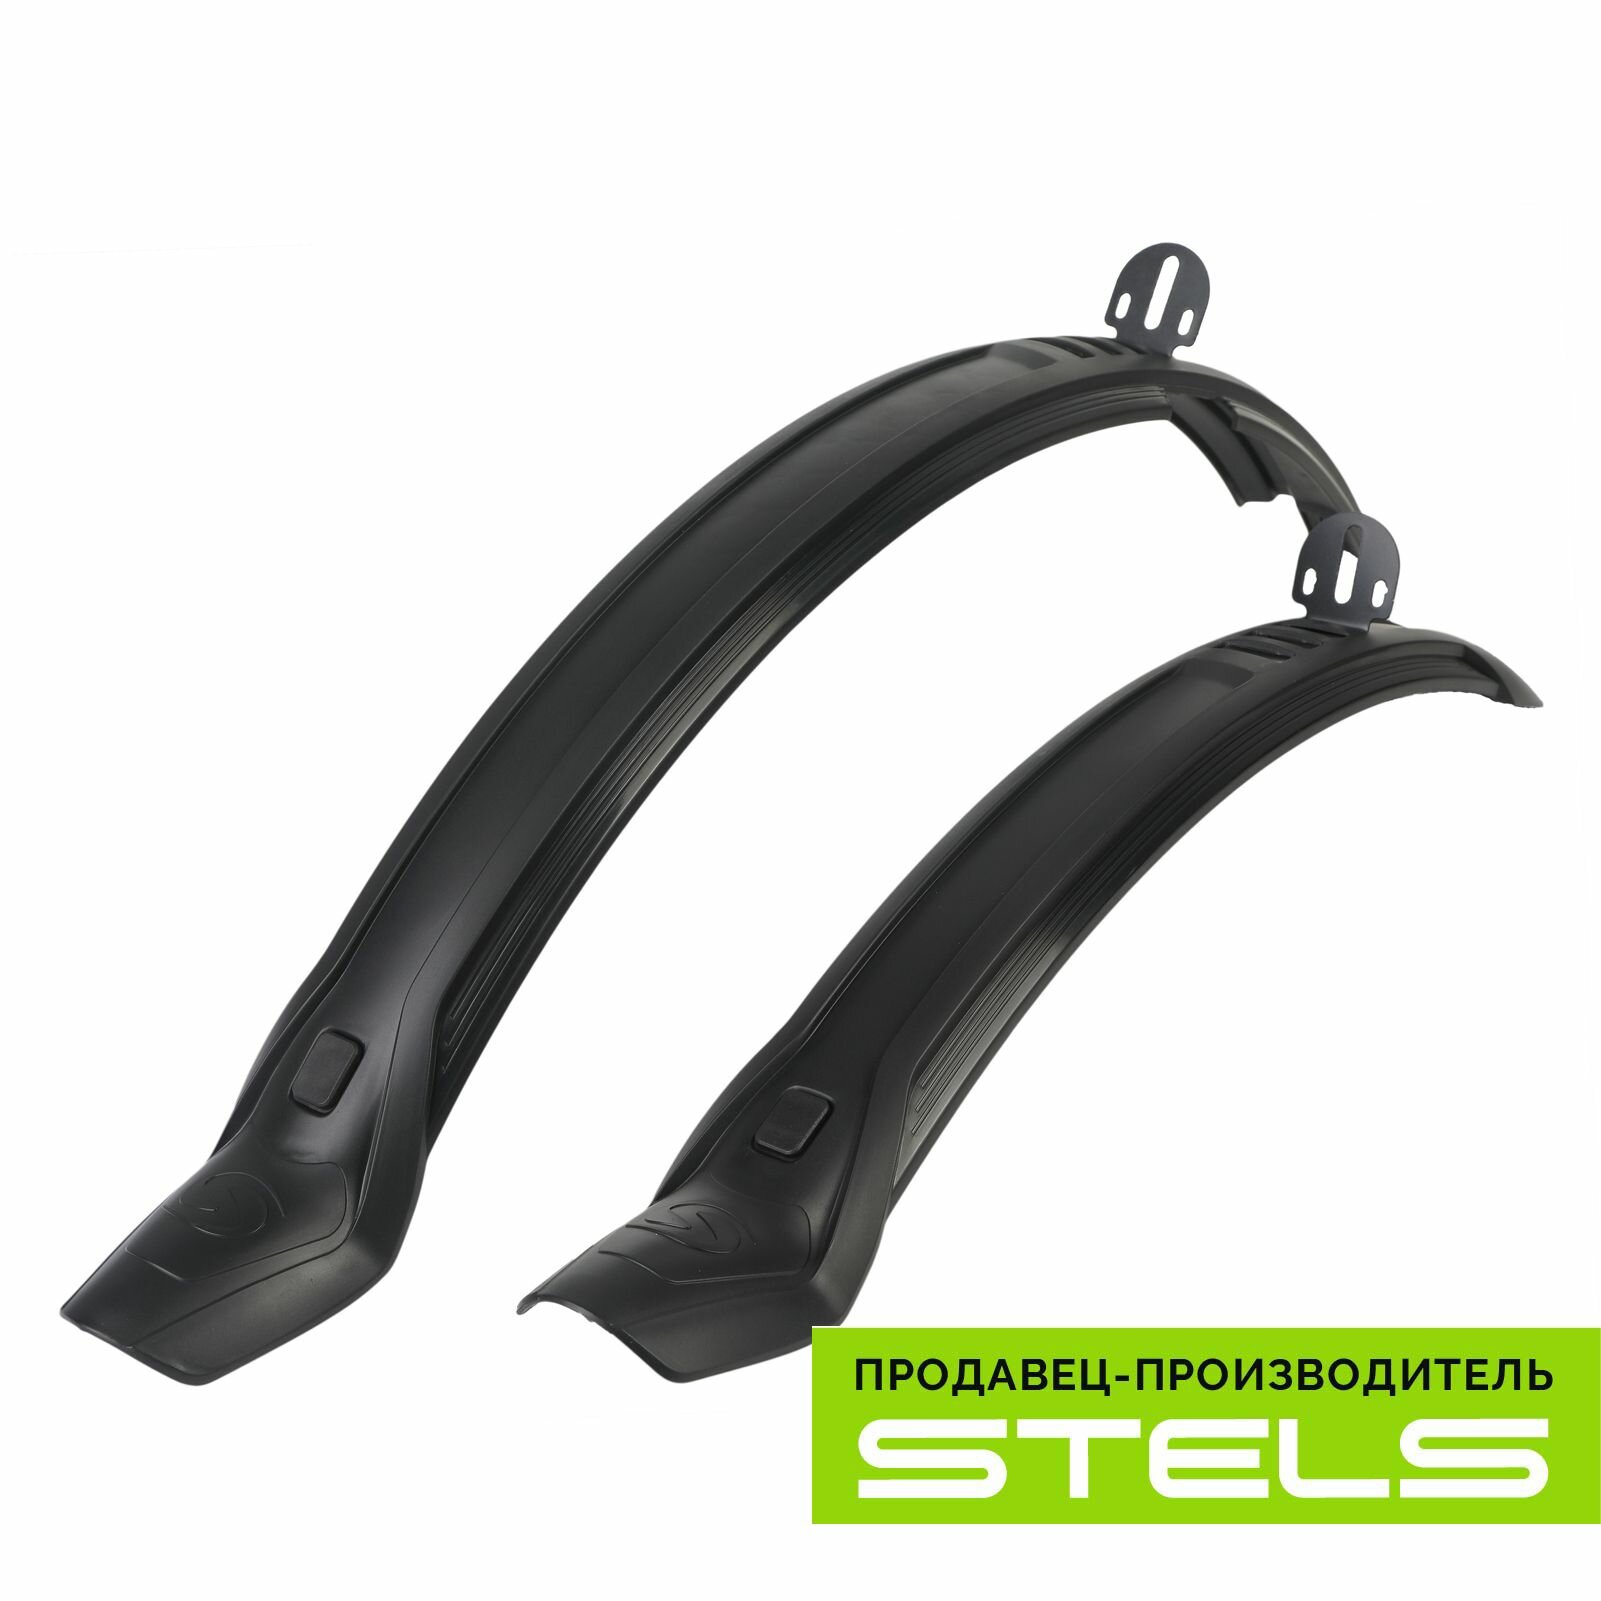 Крылья для велосипеда 24" STELS XH-B267 пластиковые чёрные, в индивидуальной упаковке (комплект) NEW